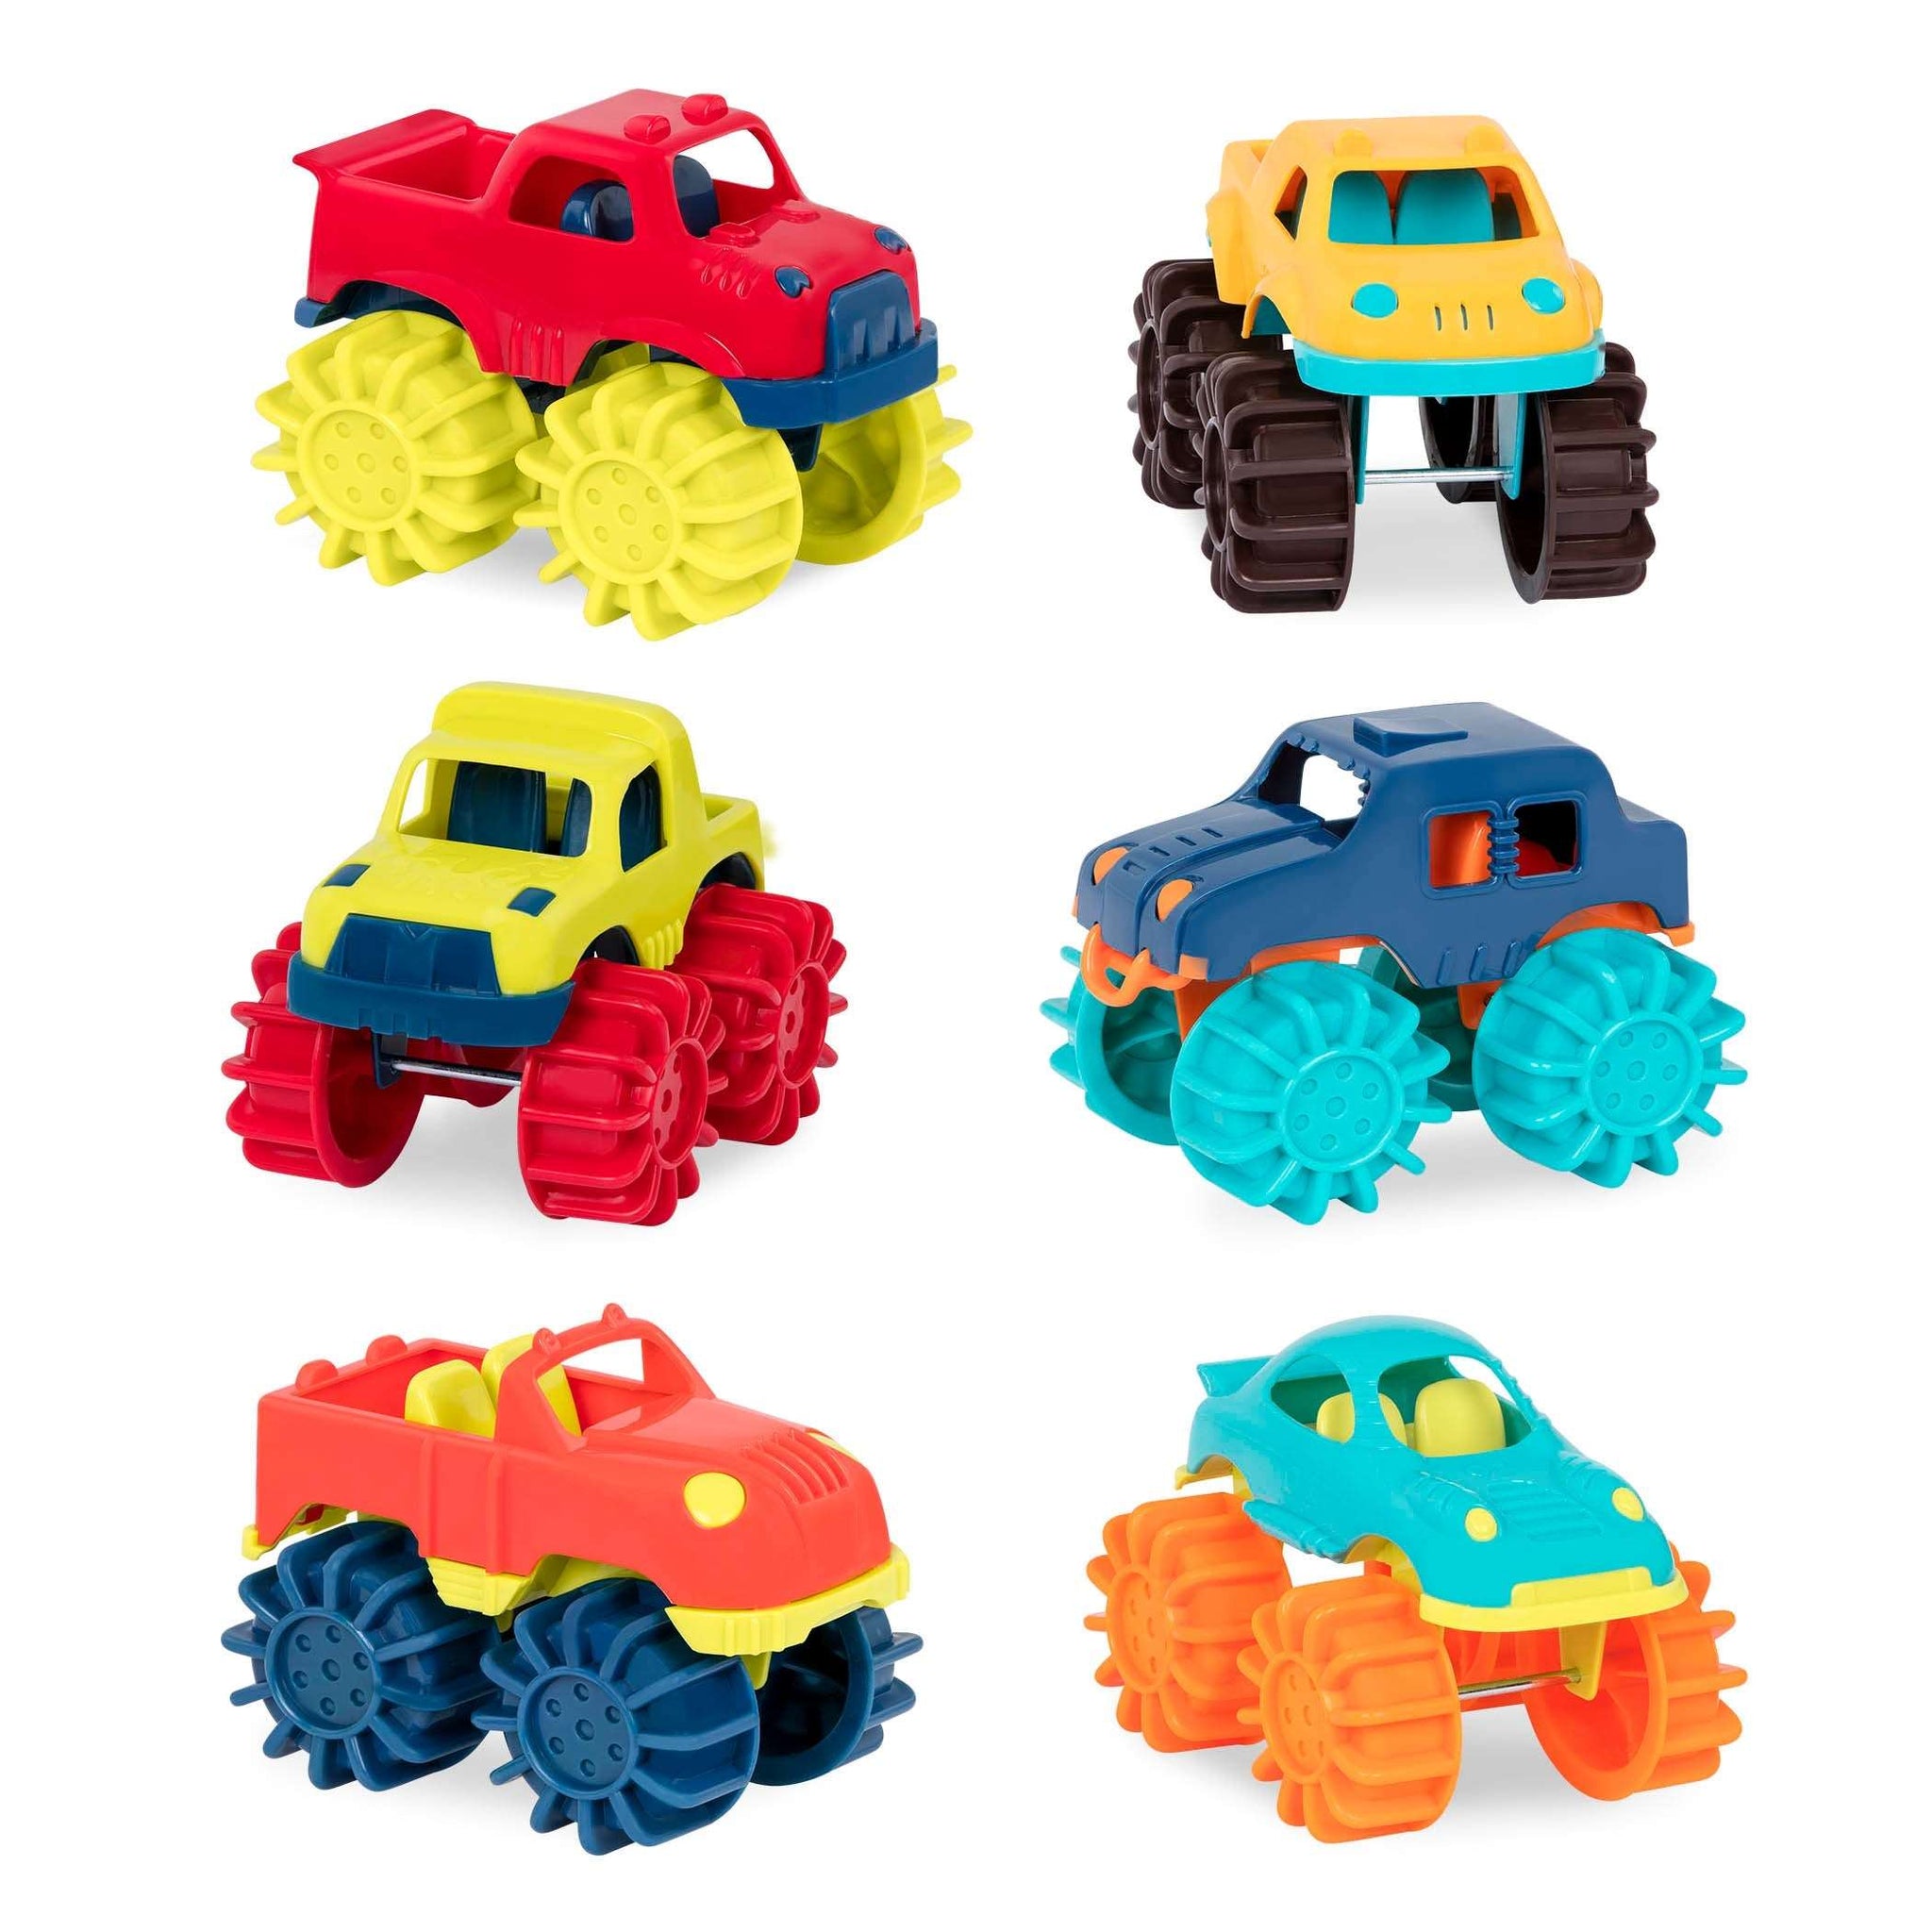 B. Mini Monster Trucks